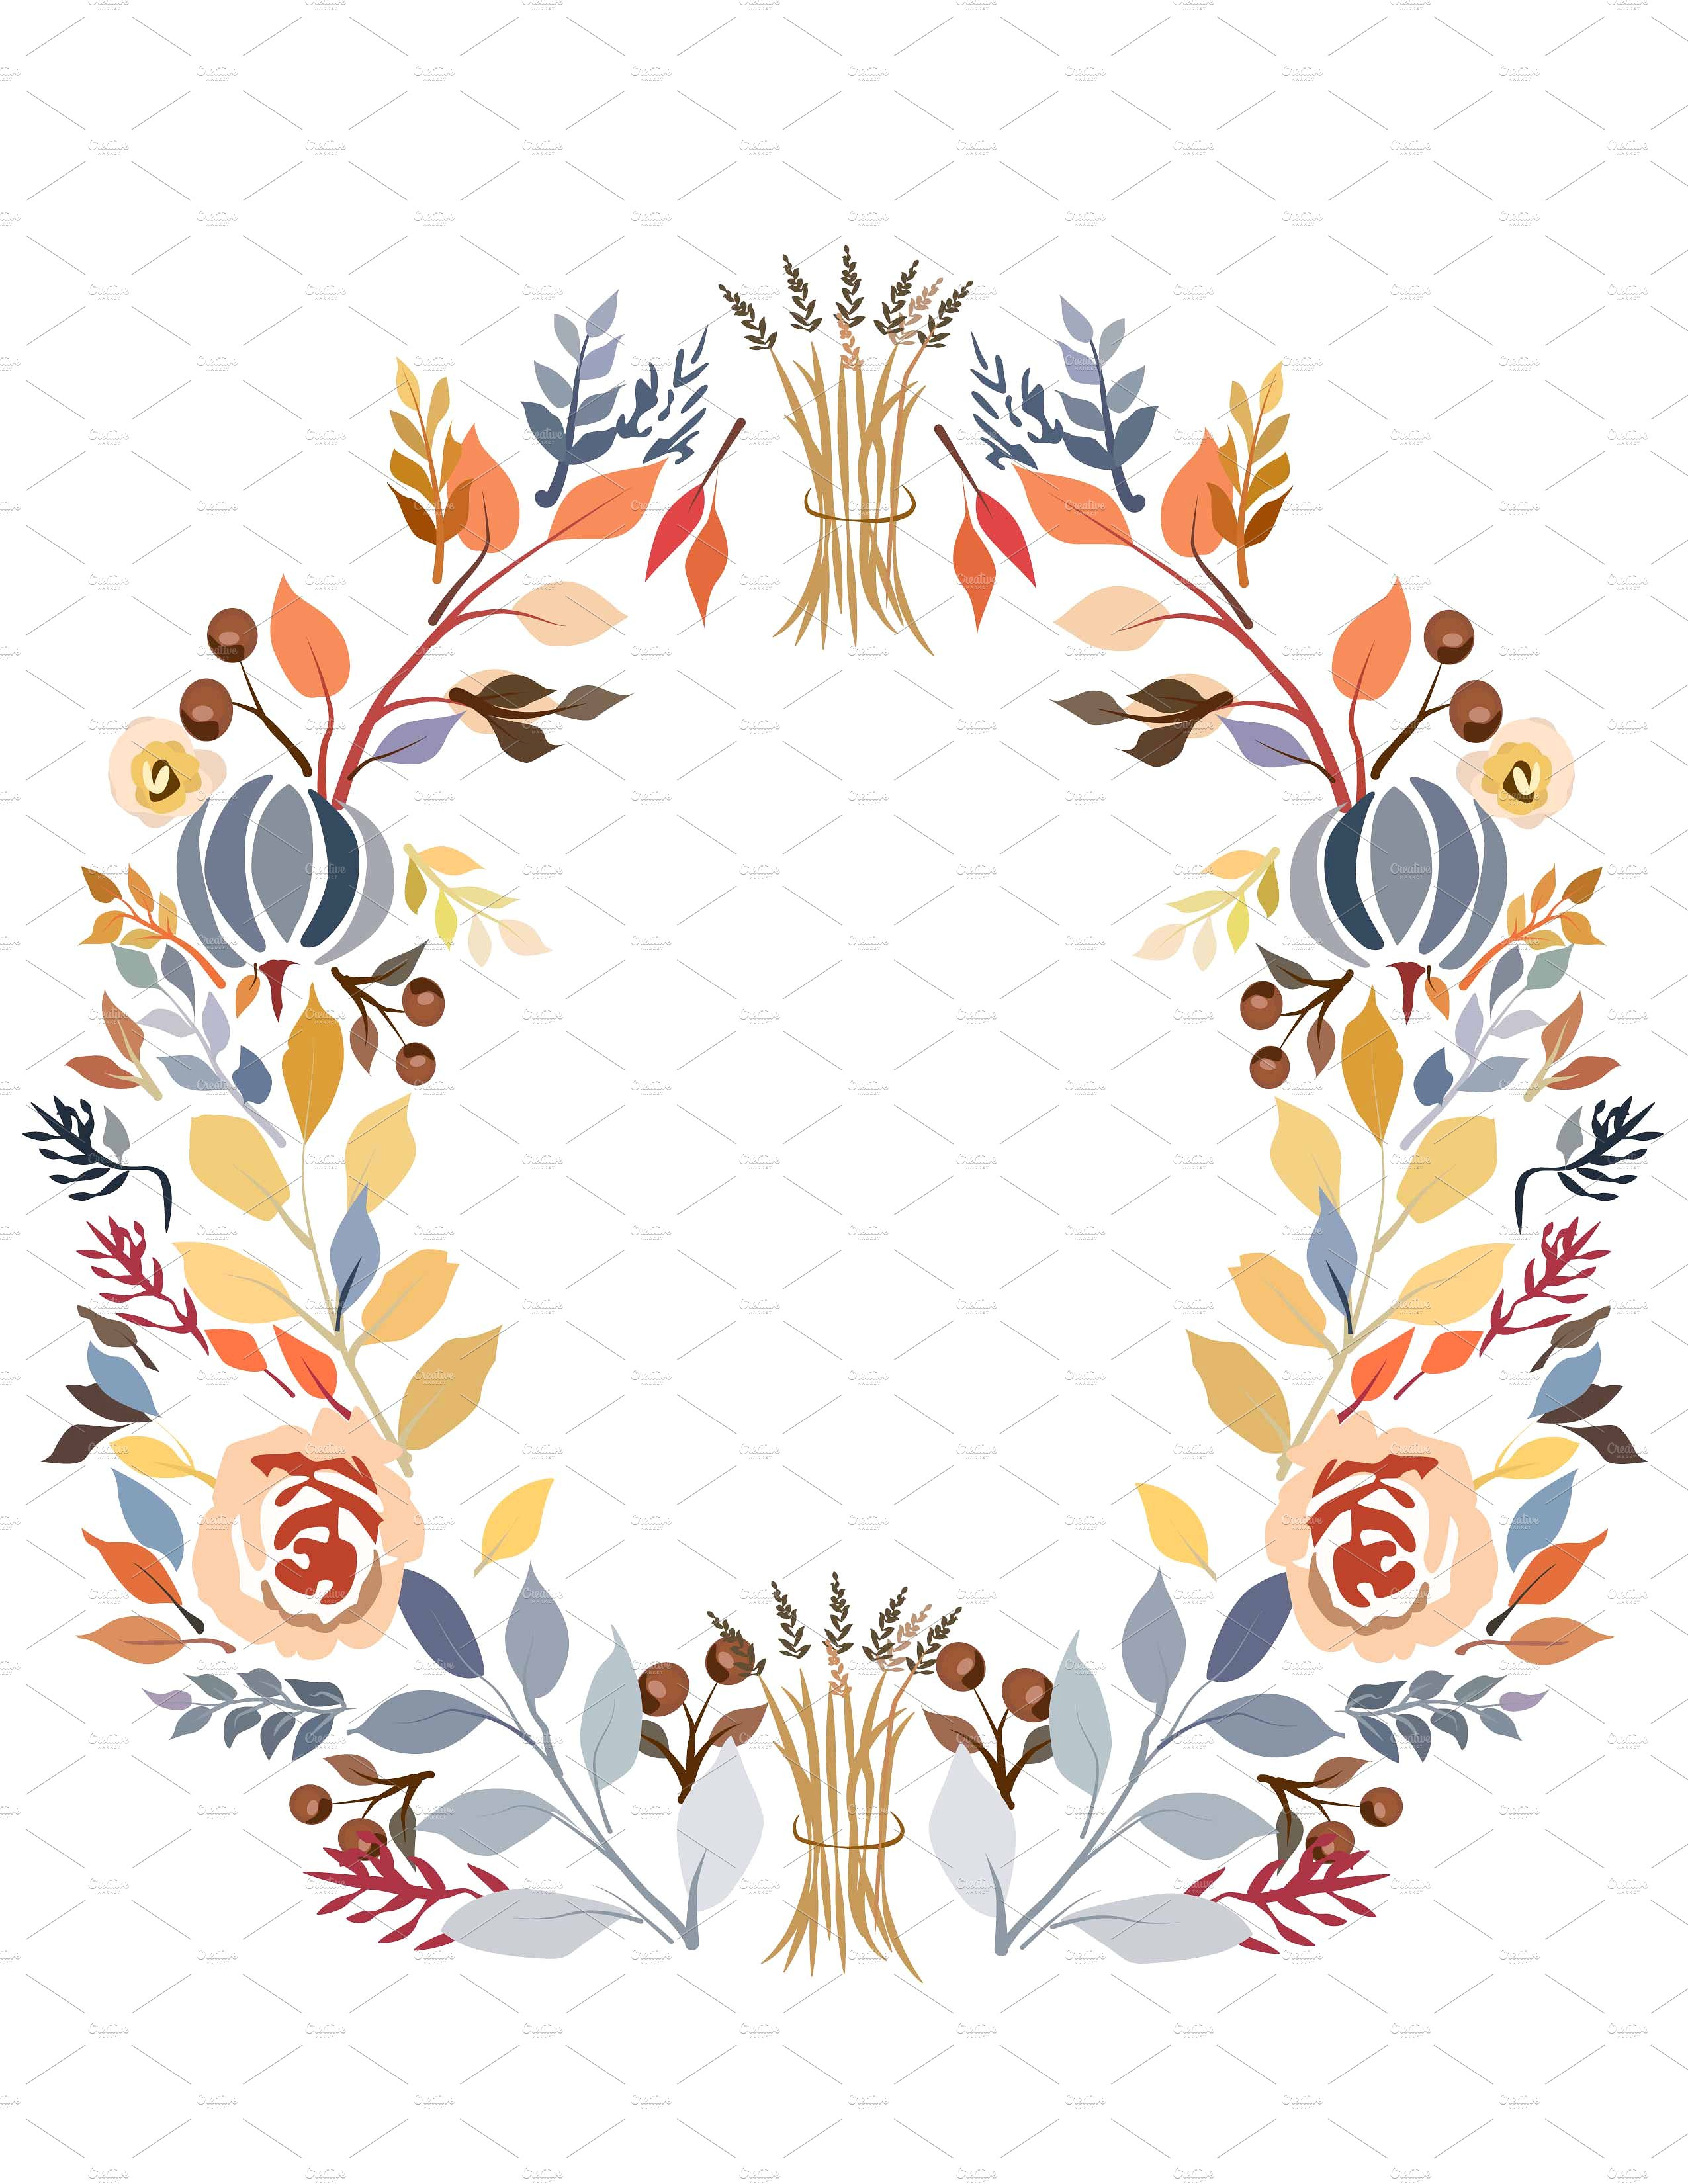 美丽的秋色为主题的花圈图案  Beautiful Autumn-Themed Wreath Pattern插图1